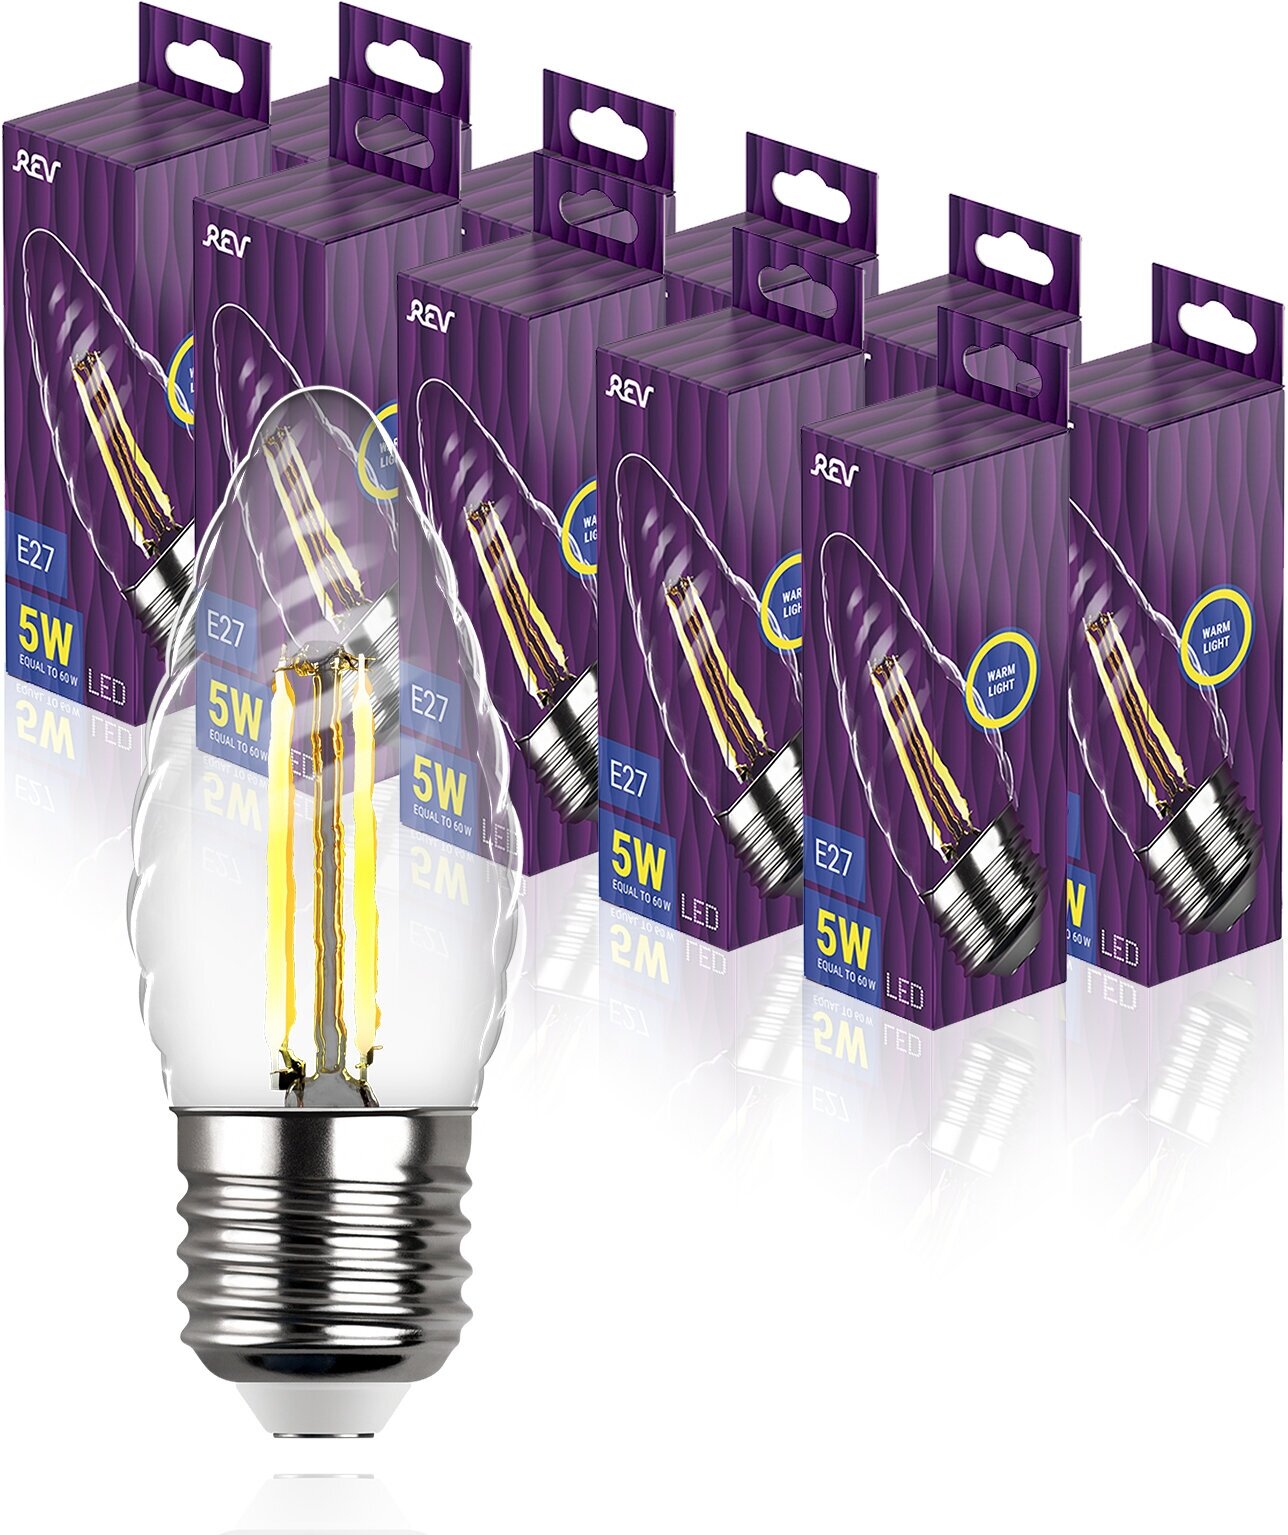 Упаковка светодиодных филаментных ламп 10 шт REV 32426 3, 2700К, Е27, FTC37, 5Вт